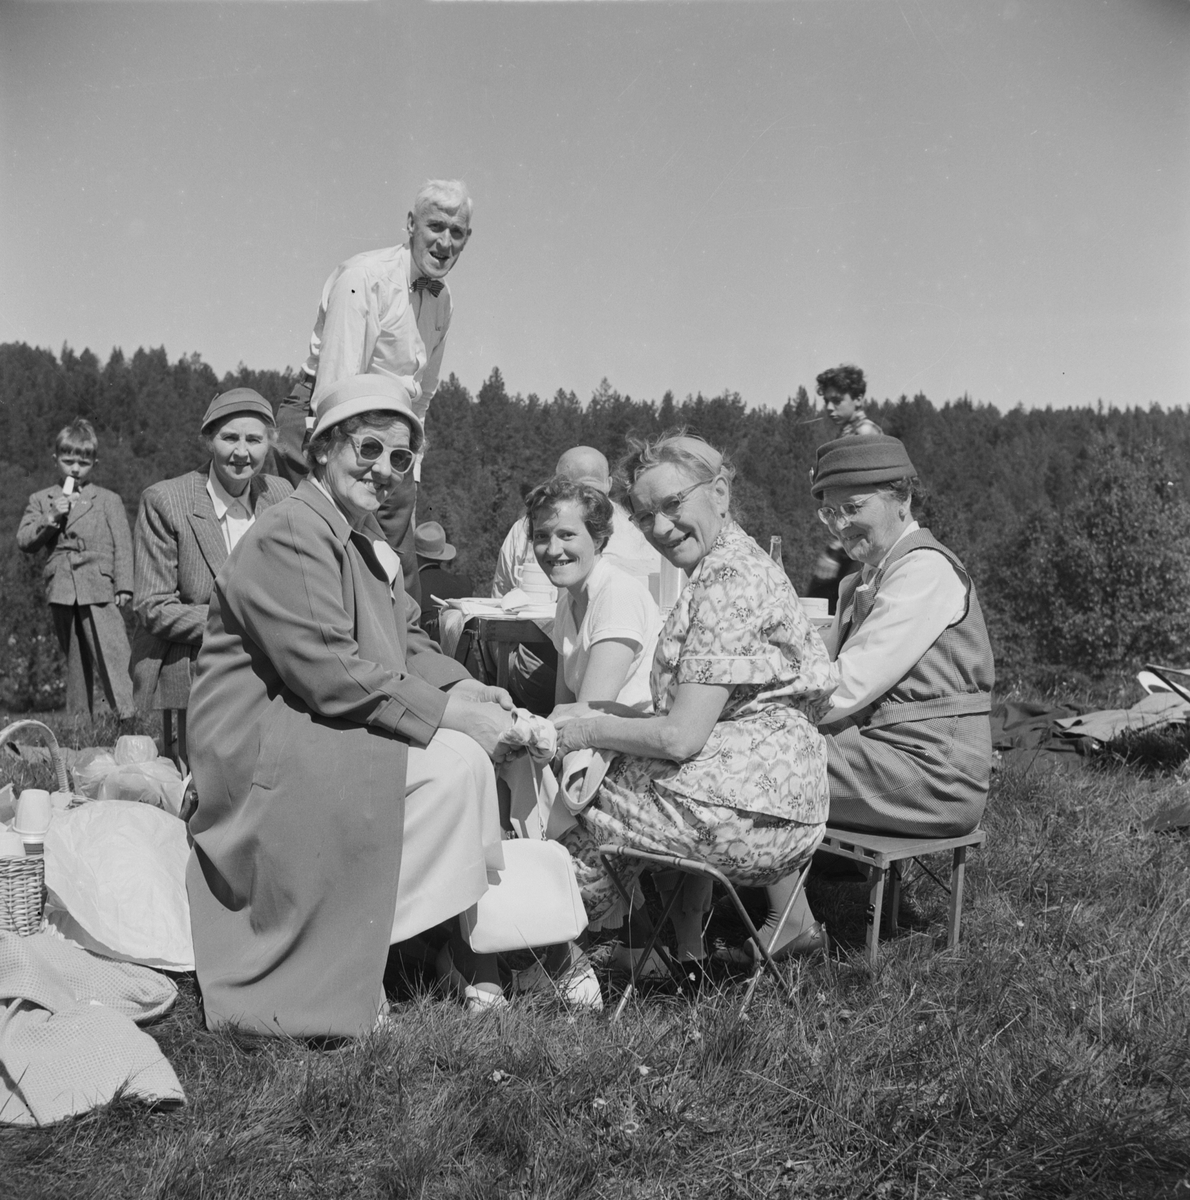 Picnic under stevne på Nyplassen 1957 (Grutsæter hytteplass).